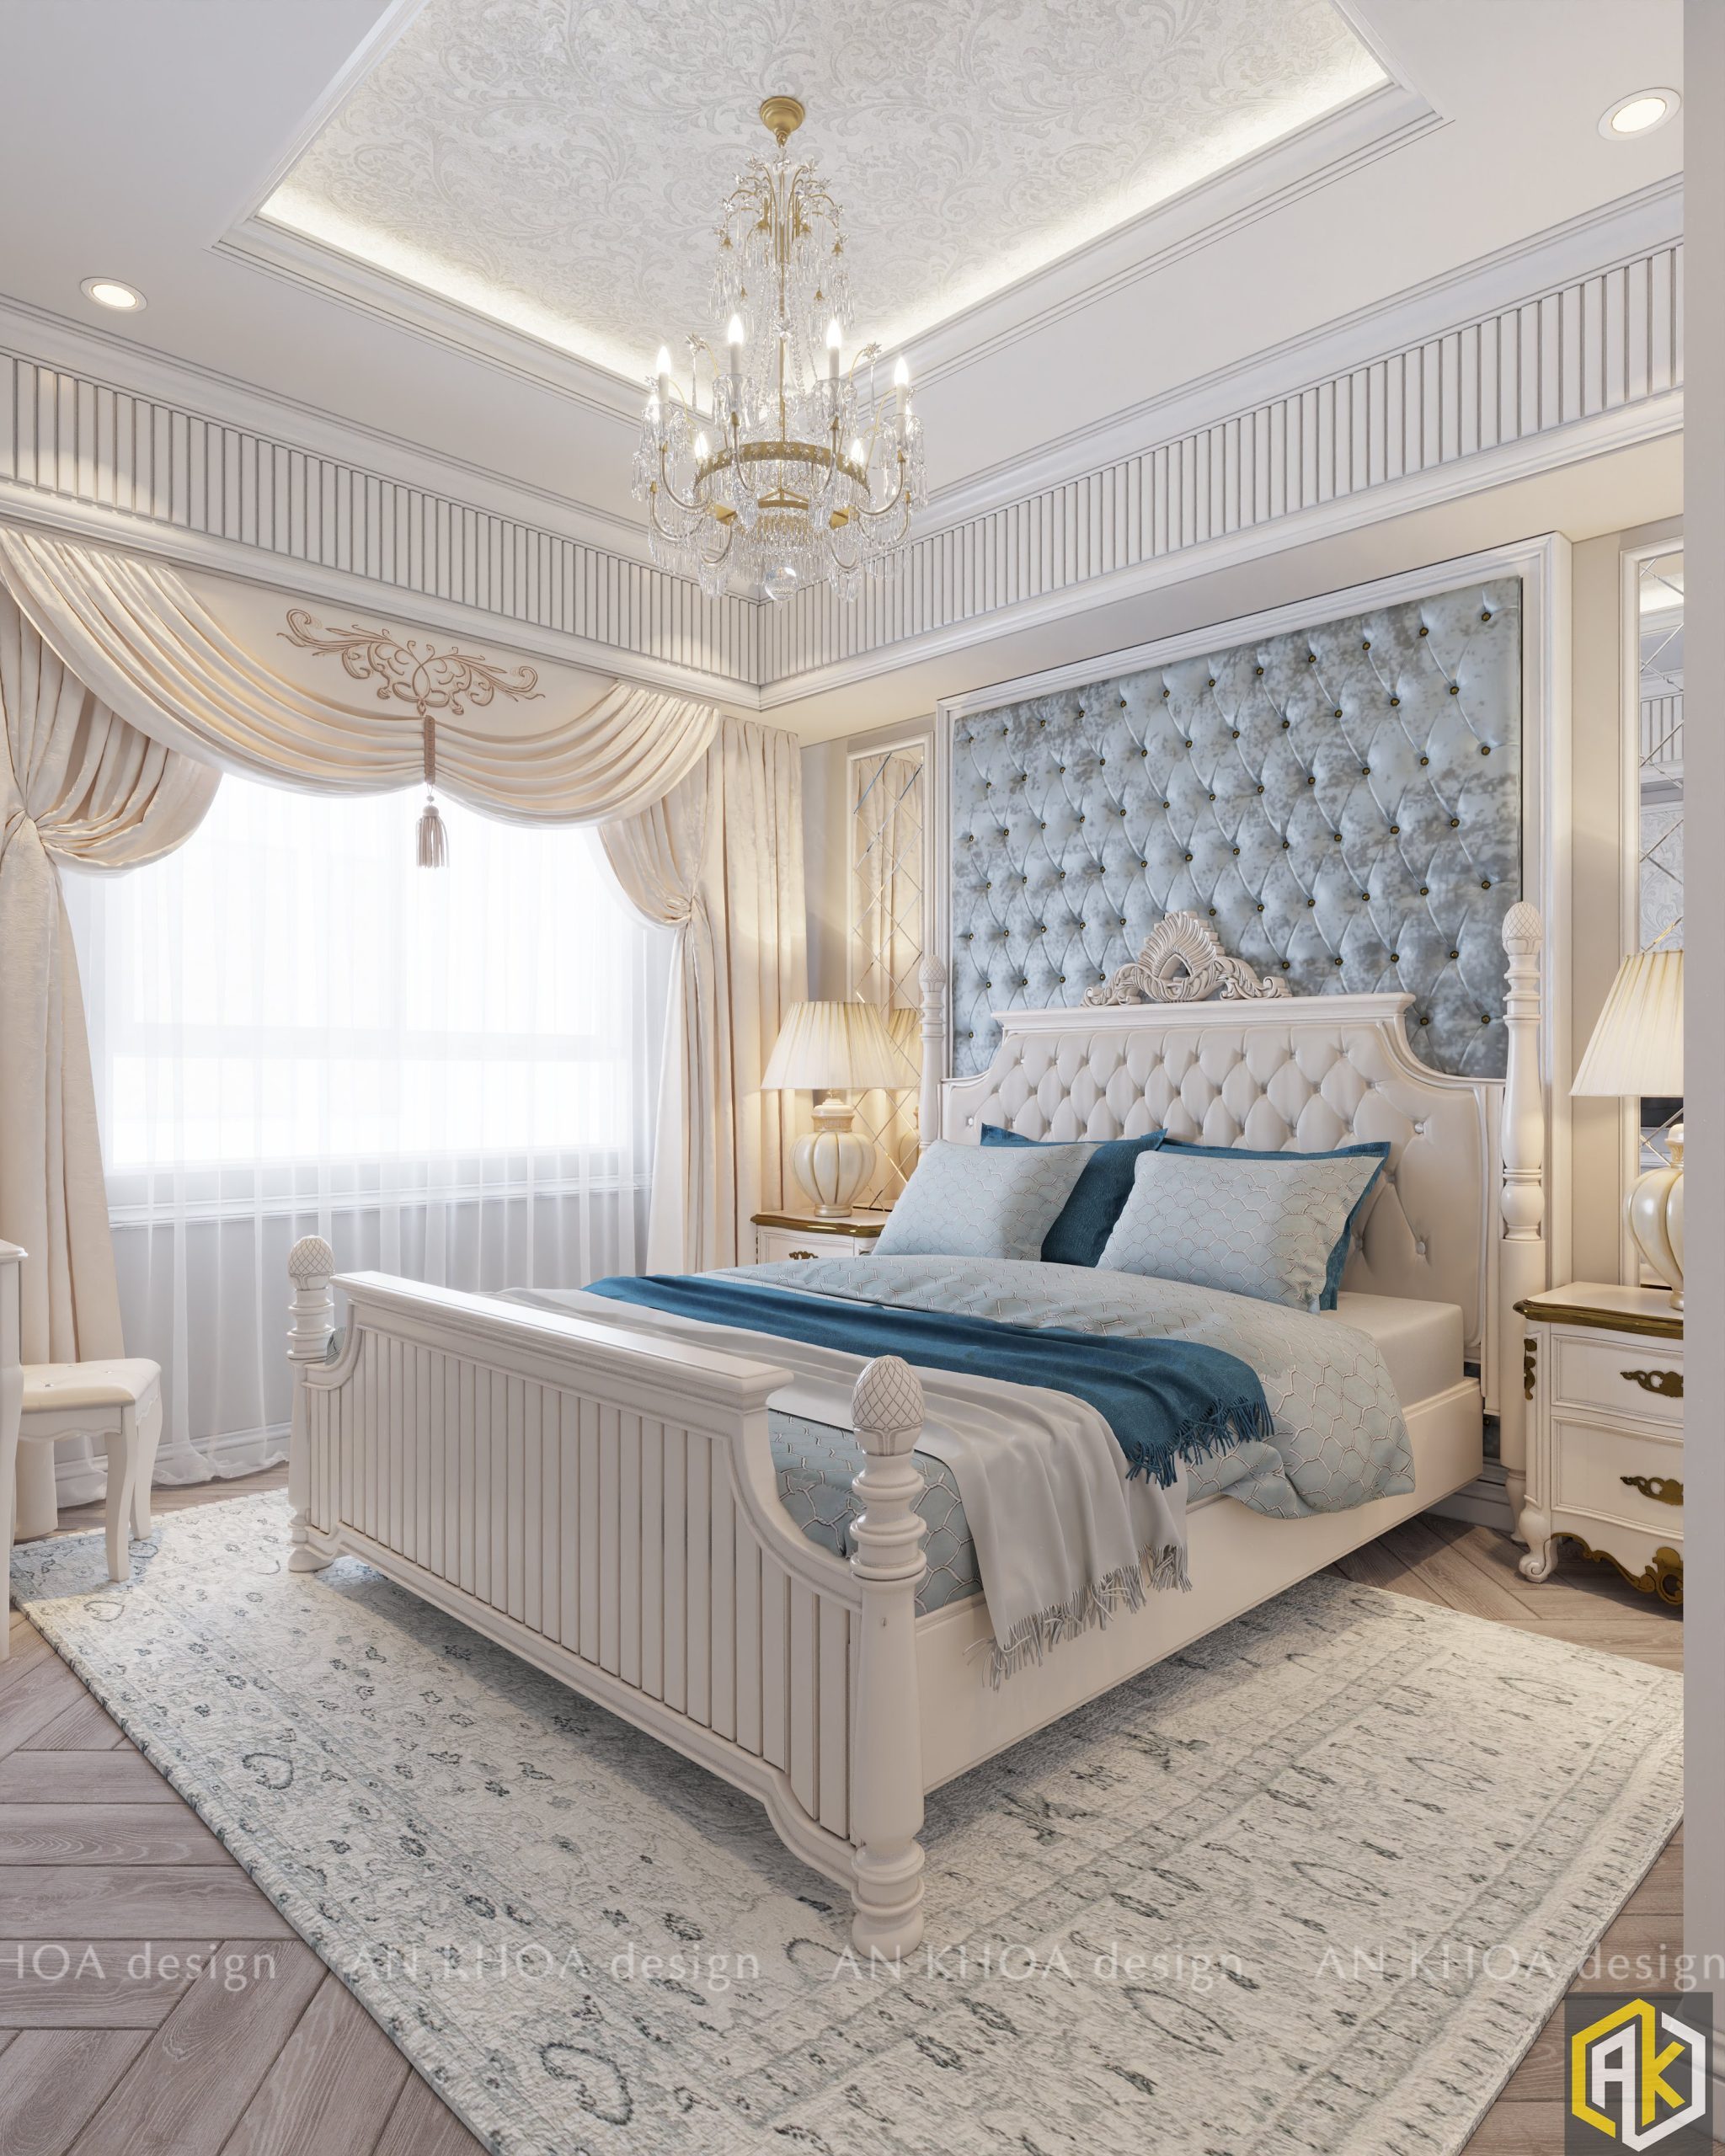 Thiết kế nội thất phong cách luxury - AnKhoa Desgin